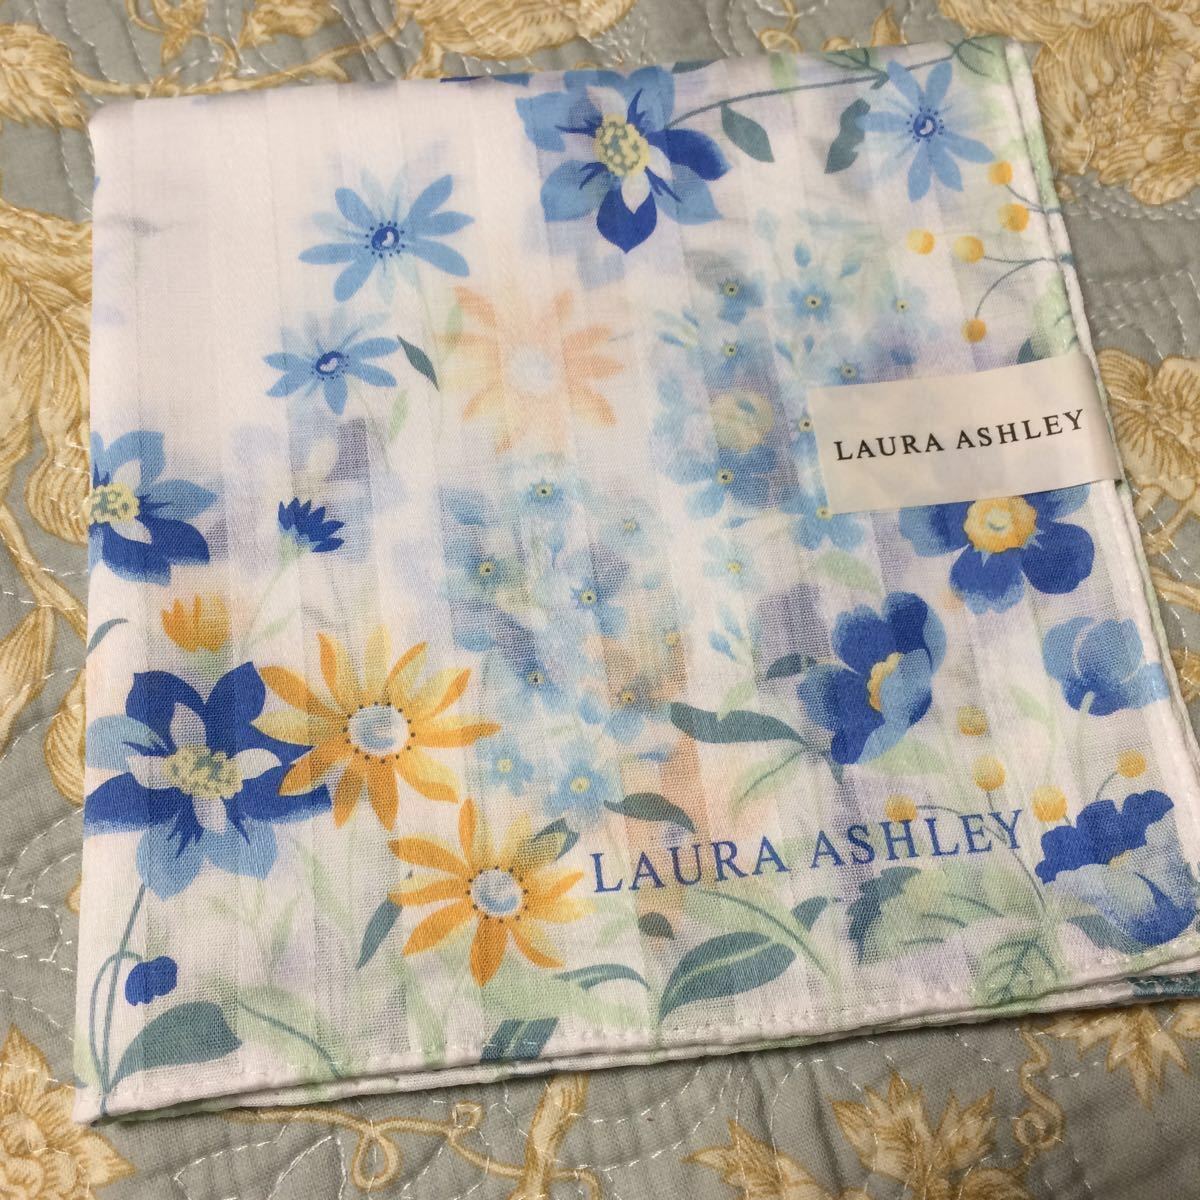 LAURA ASHLEY Laura Ashley большой размер носовой платок цветочный принт оттенок голубого не использовался C